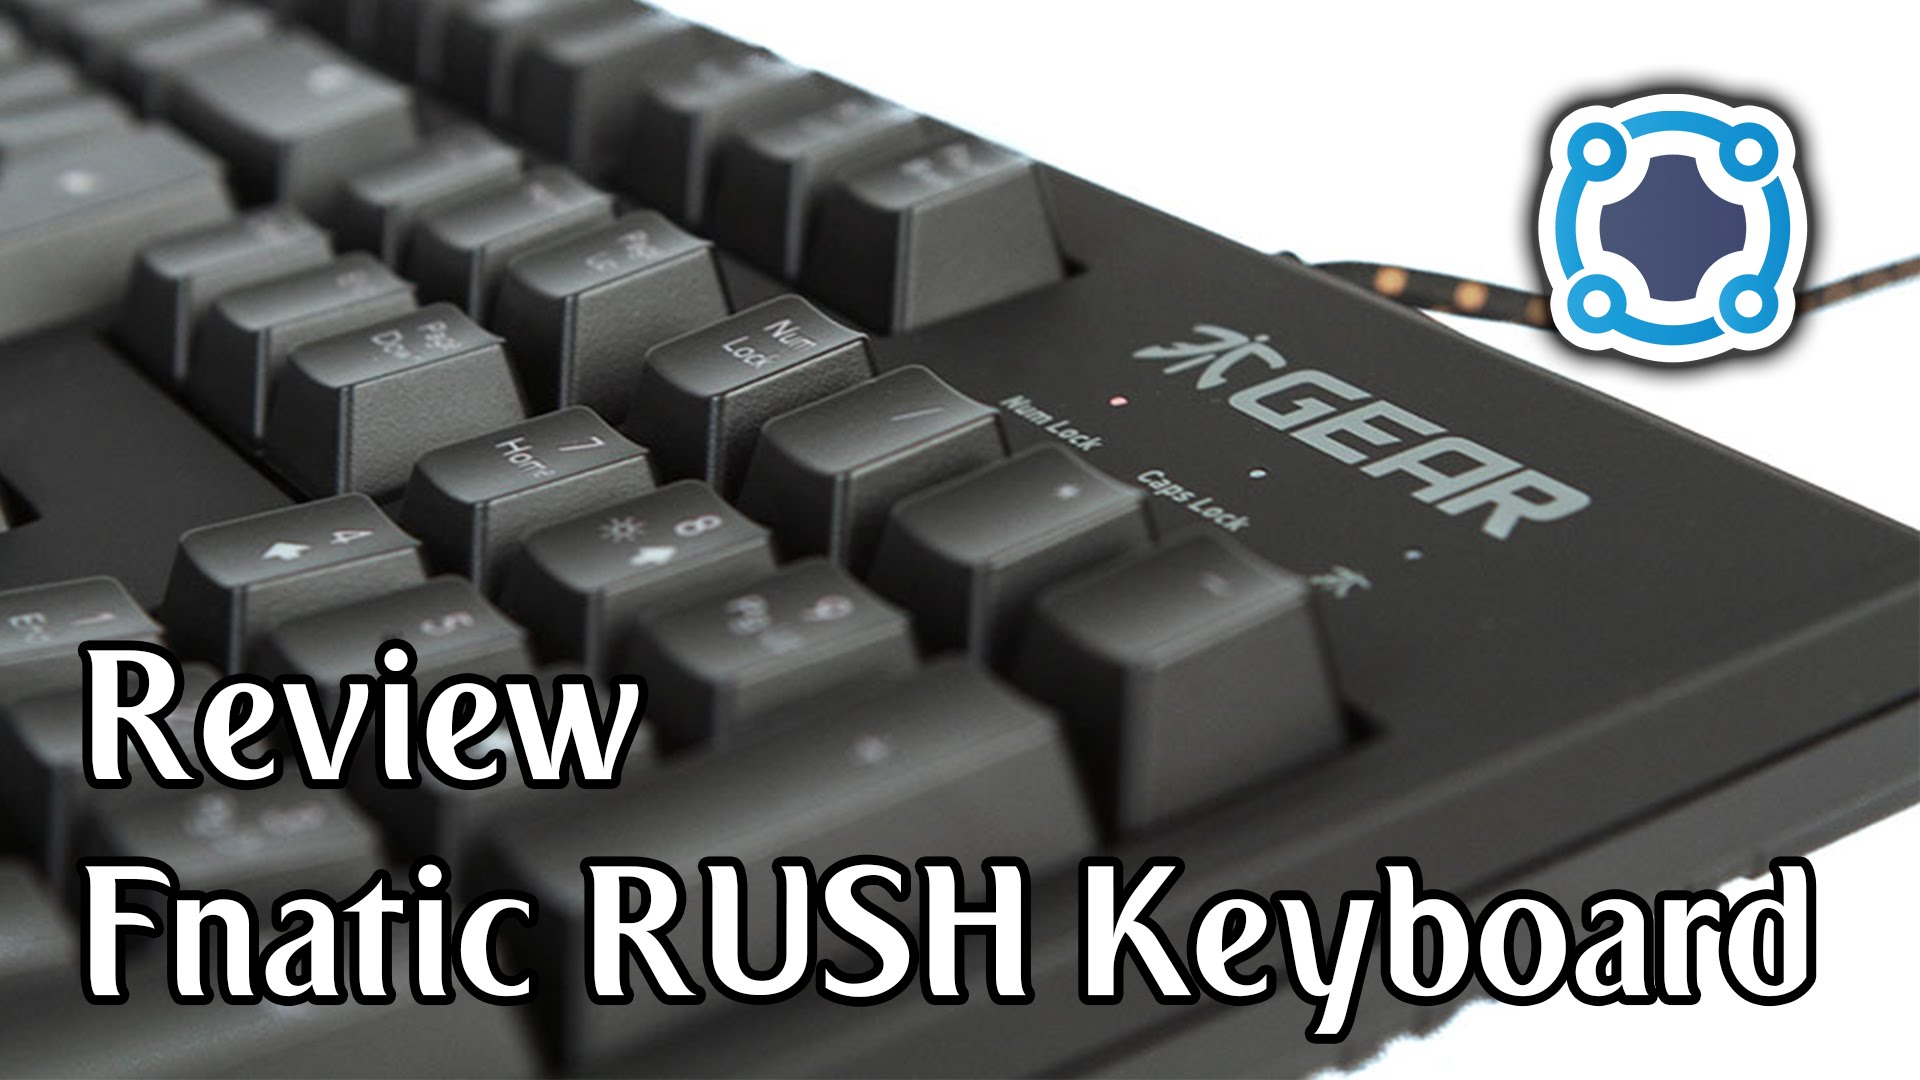 Review - Fnatic Rush Keyboard